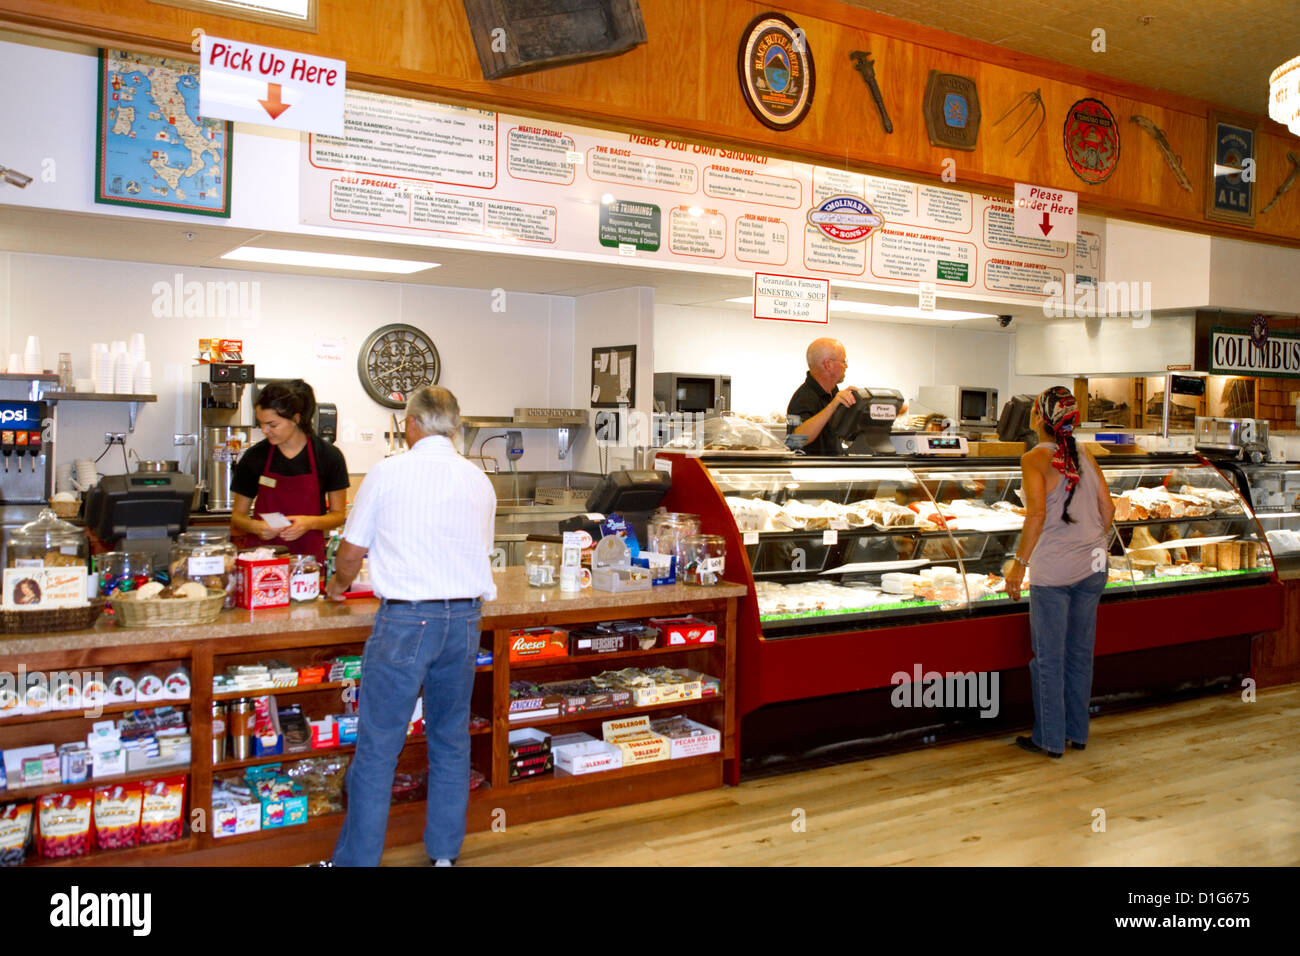 Granzella's restaurant and deli located in Williams, California, USA. Stock Photo